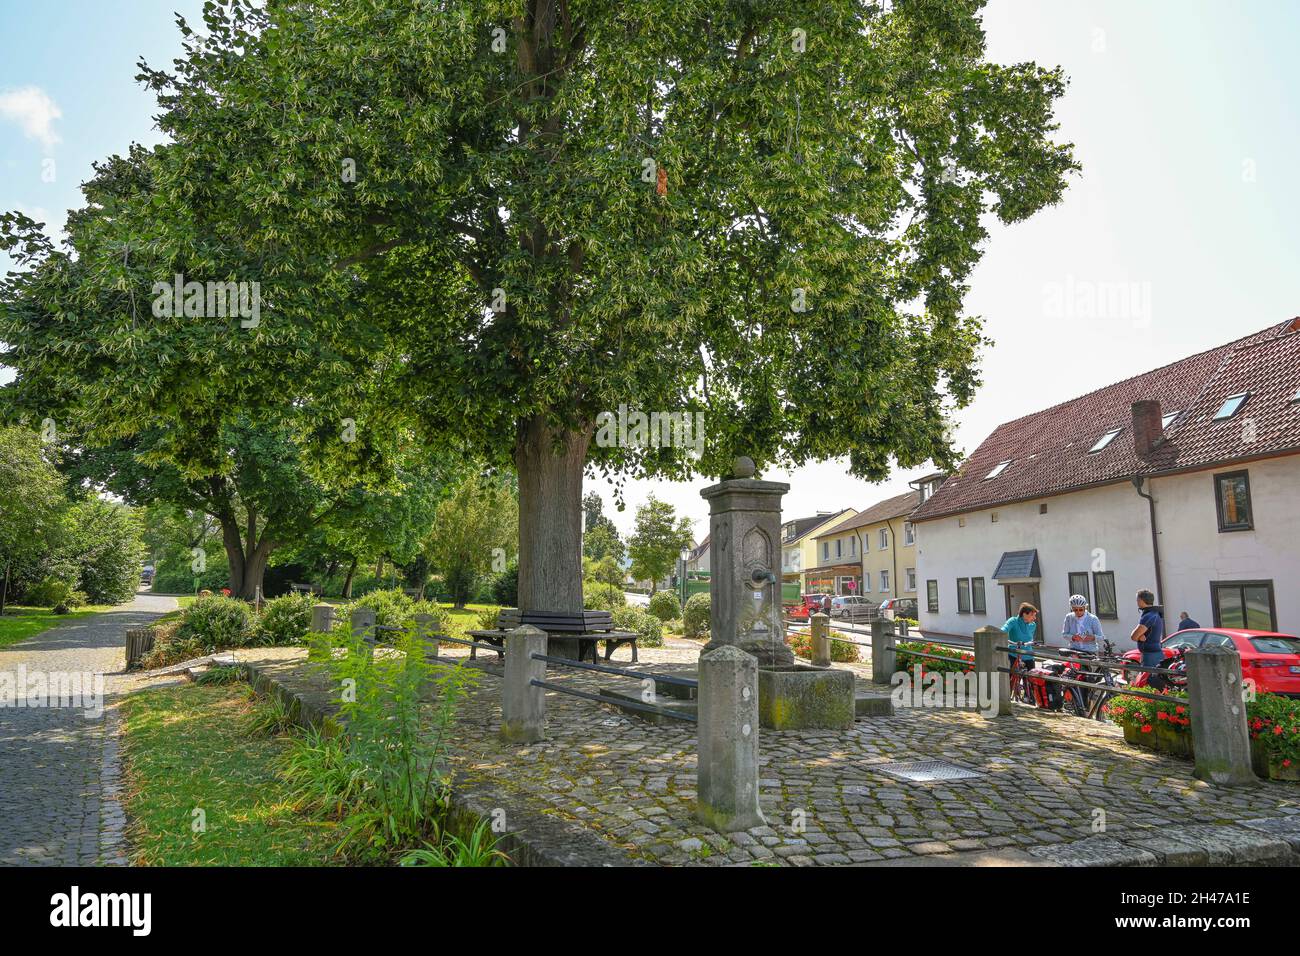 Brunnen vor dem Tore, Lindenbaum, Ort des Liedes von Franz Schubert, Bad Sooden-Allendorf, Hessen, Deutschland Stockfoto